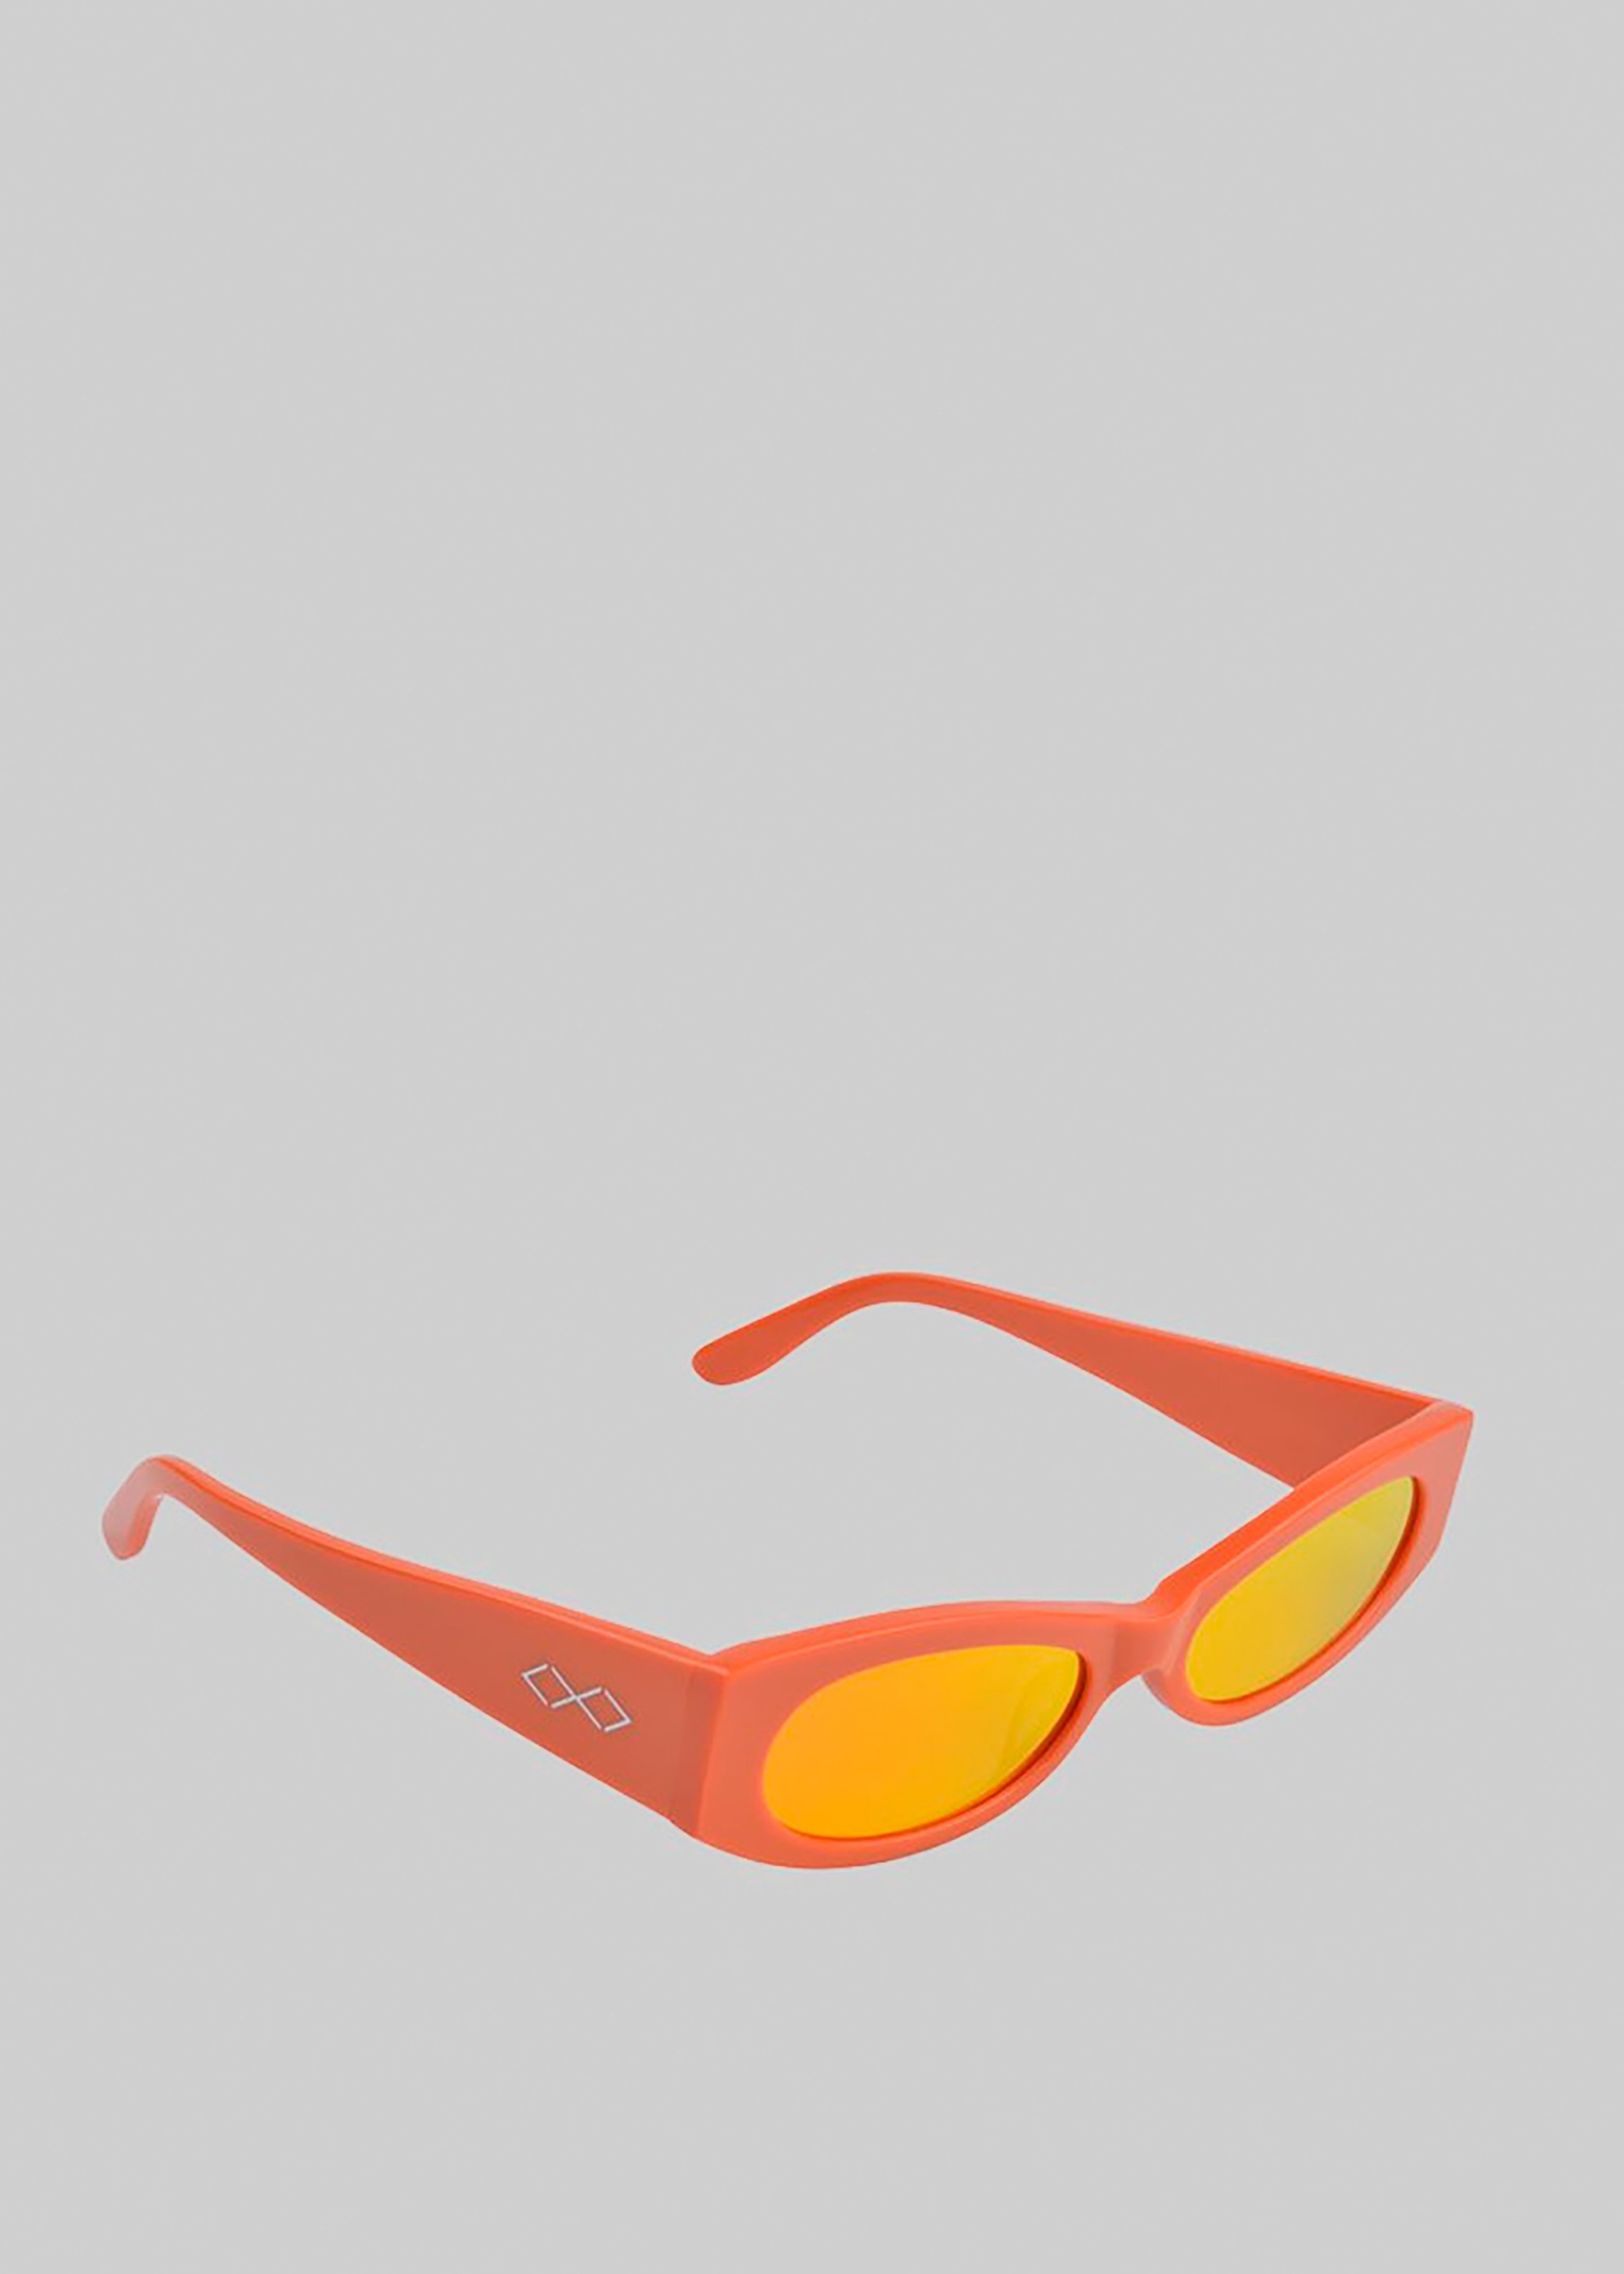 Karen Wazen Ciara Sunglasses - Carrot - 1